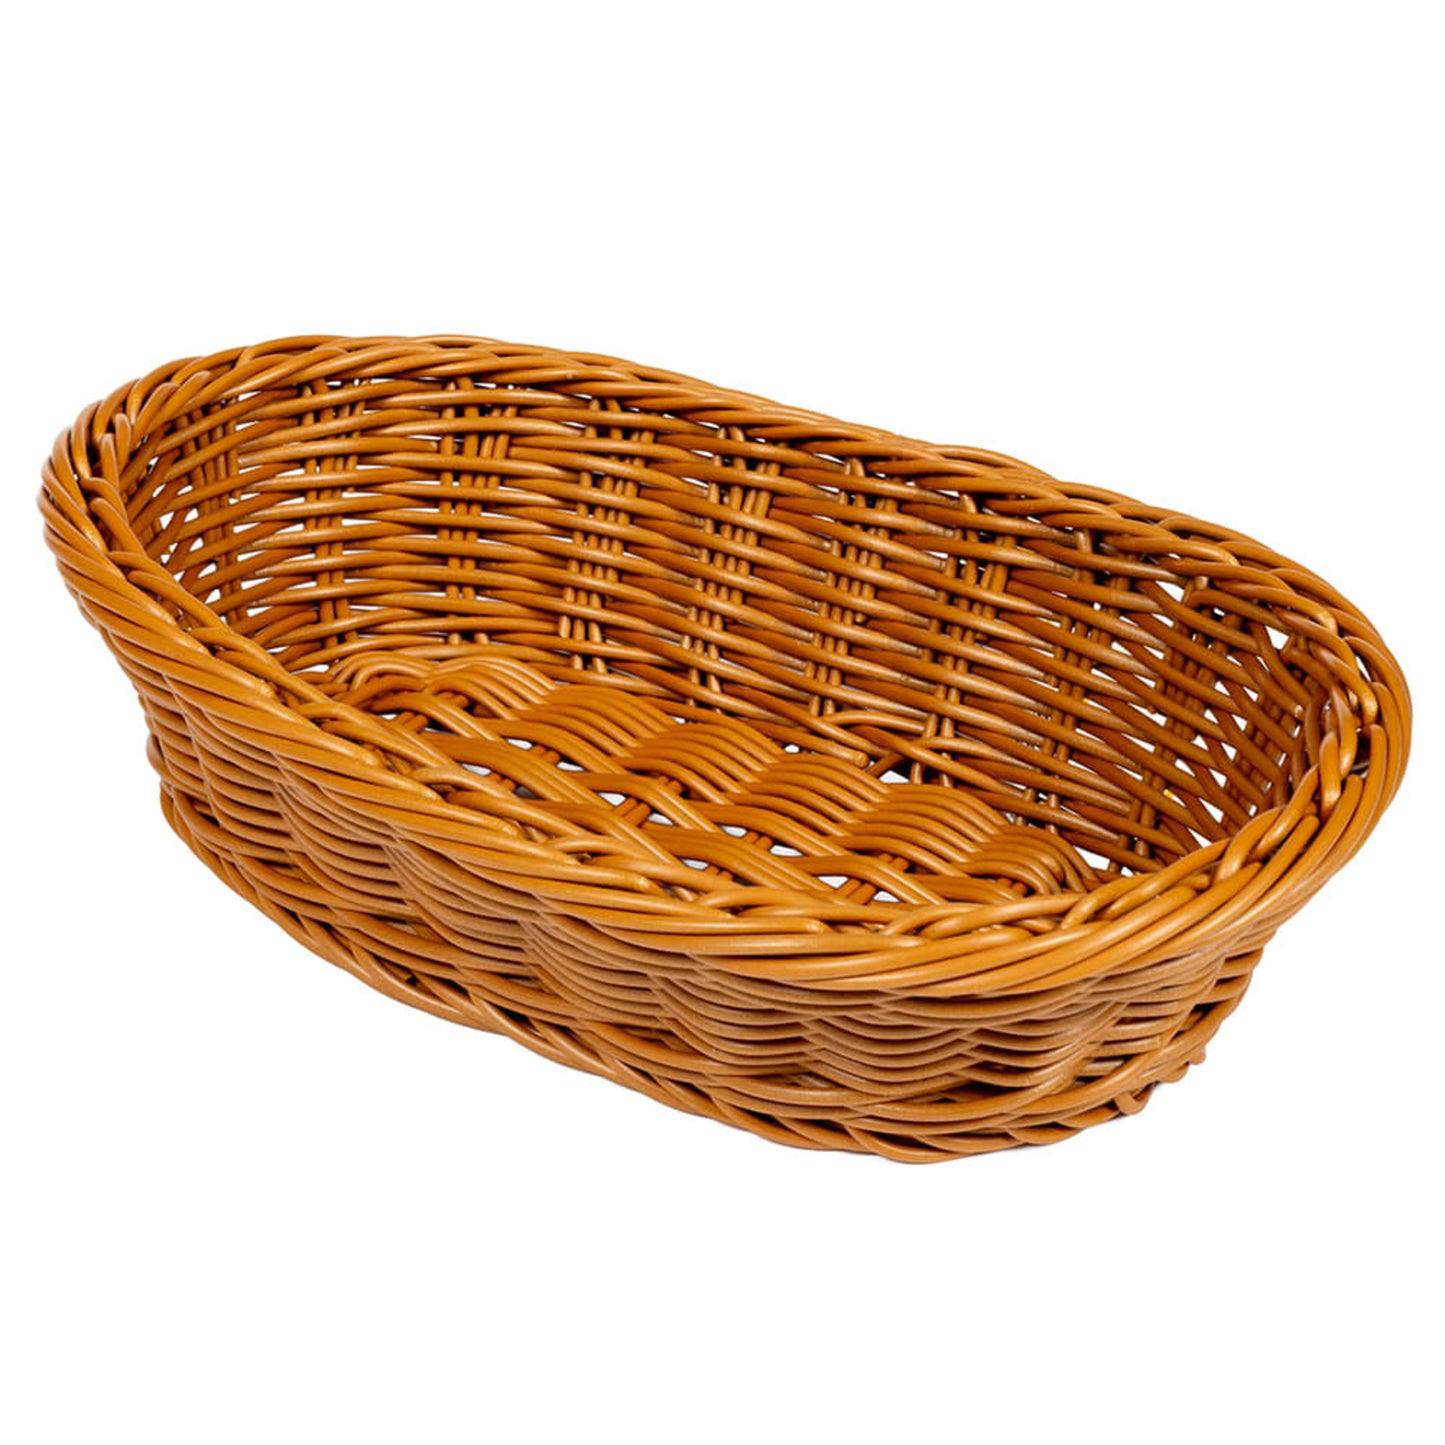 11.75" x 8" Oval Basket